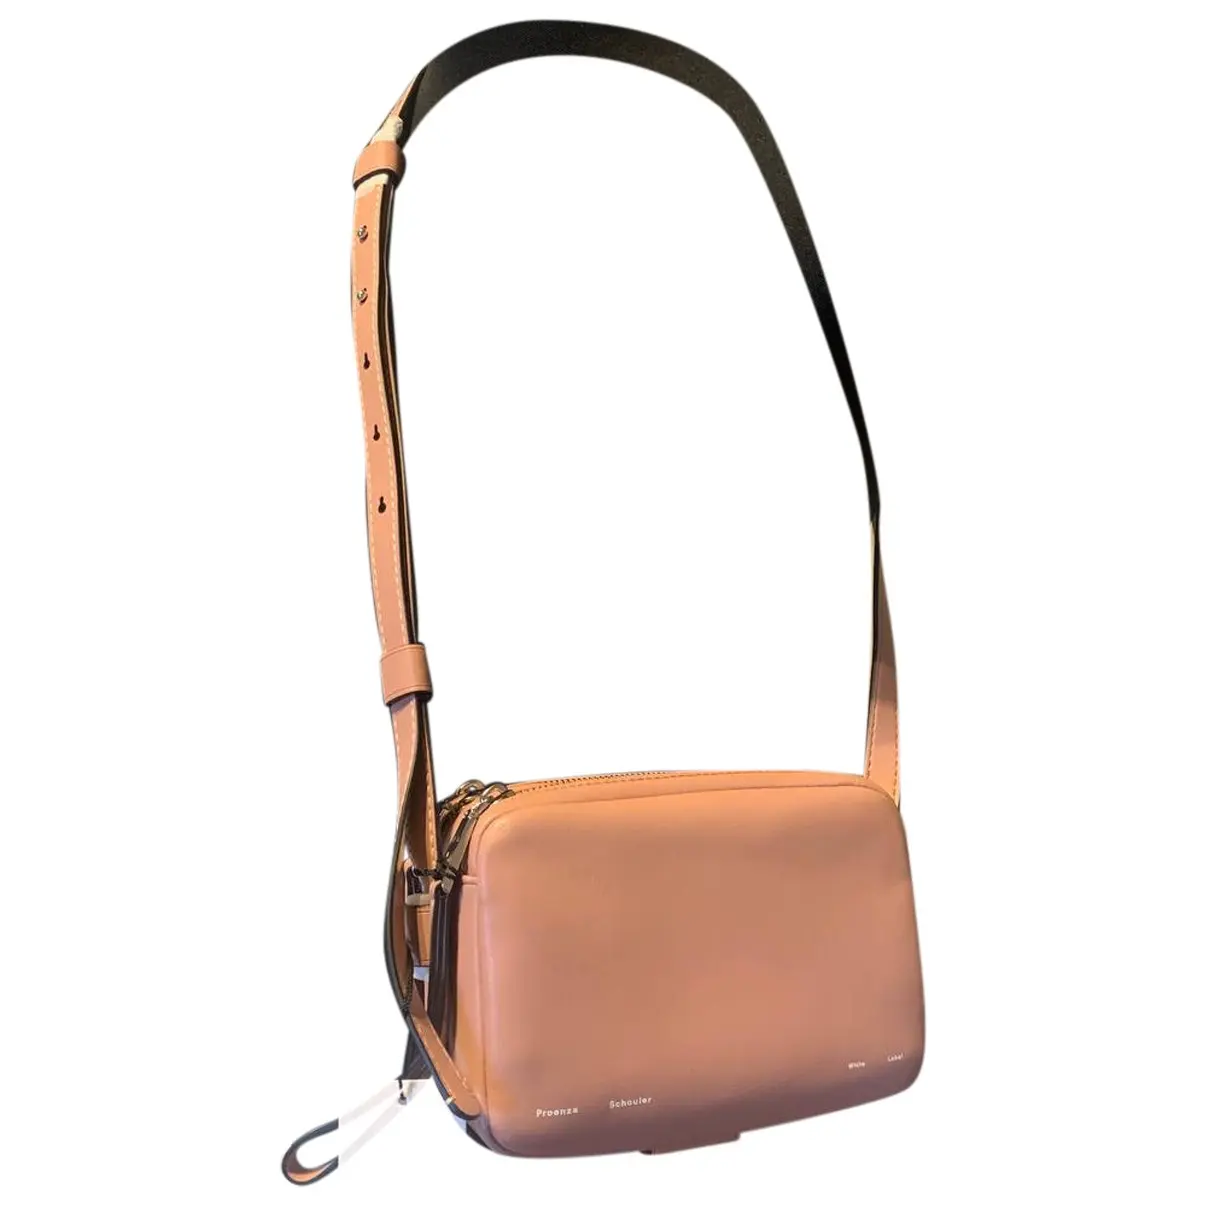 Leather handbag Proenza Schouler